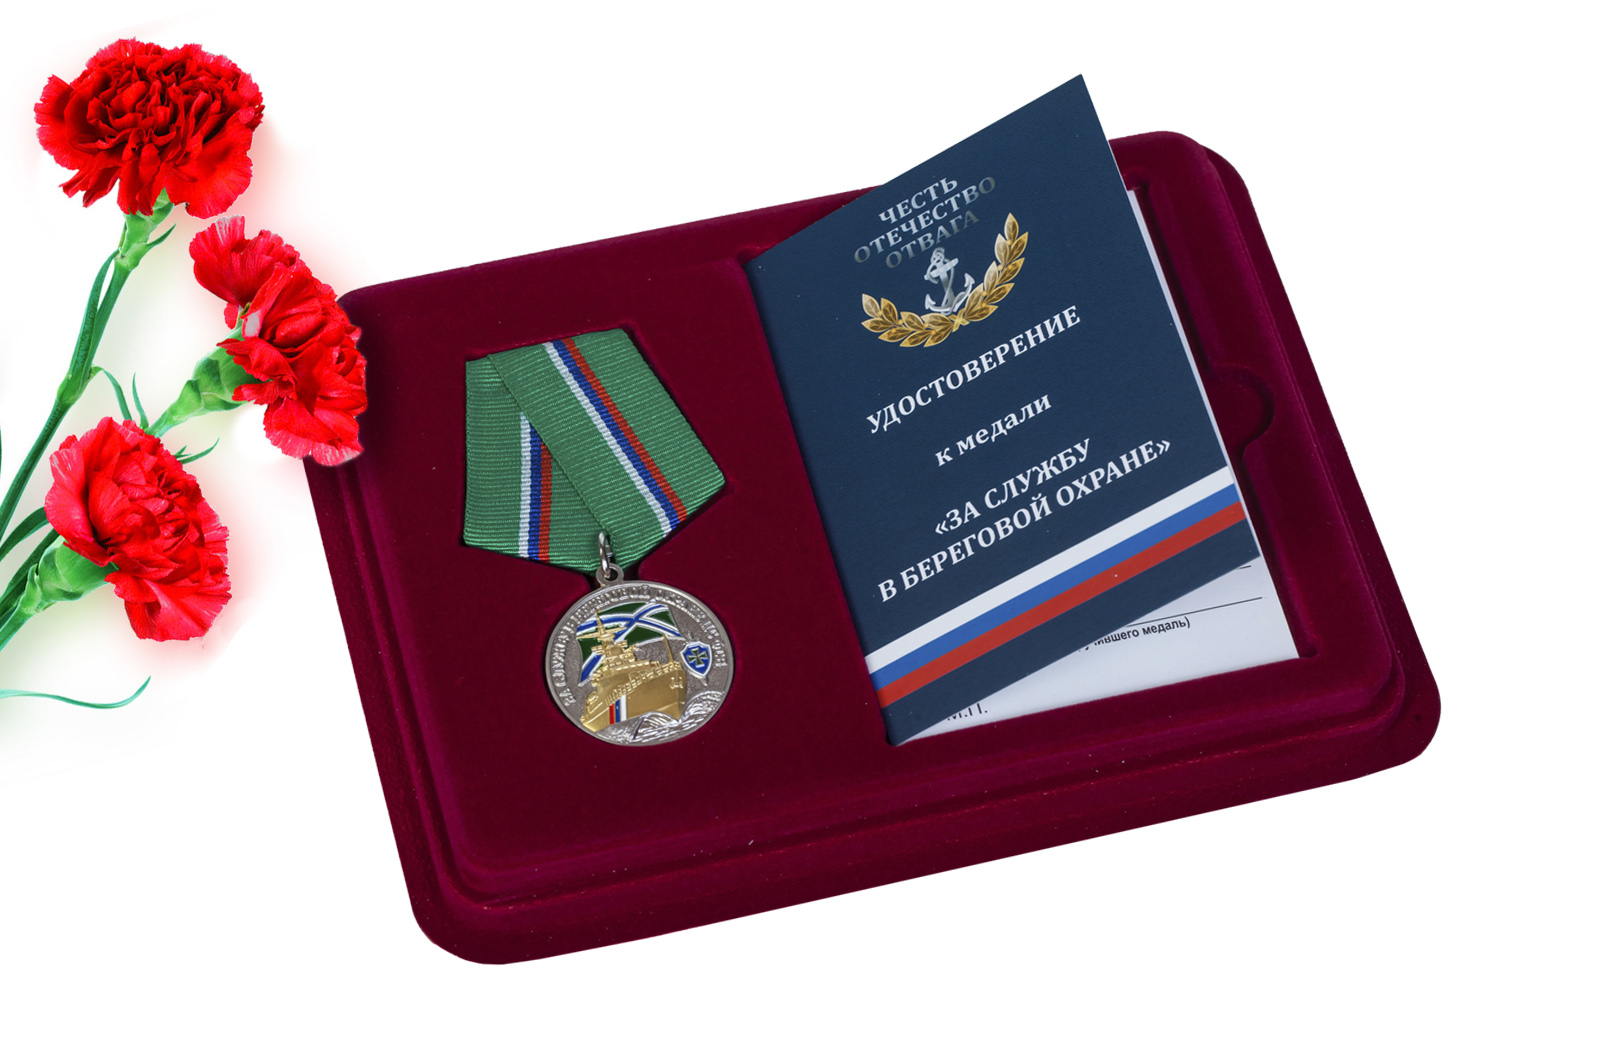 Купить медаль ПС ФСБ За службу в береговой охране с доставкой в ваш город